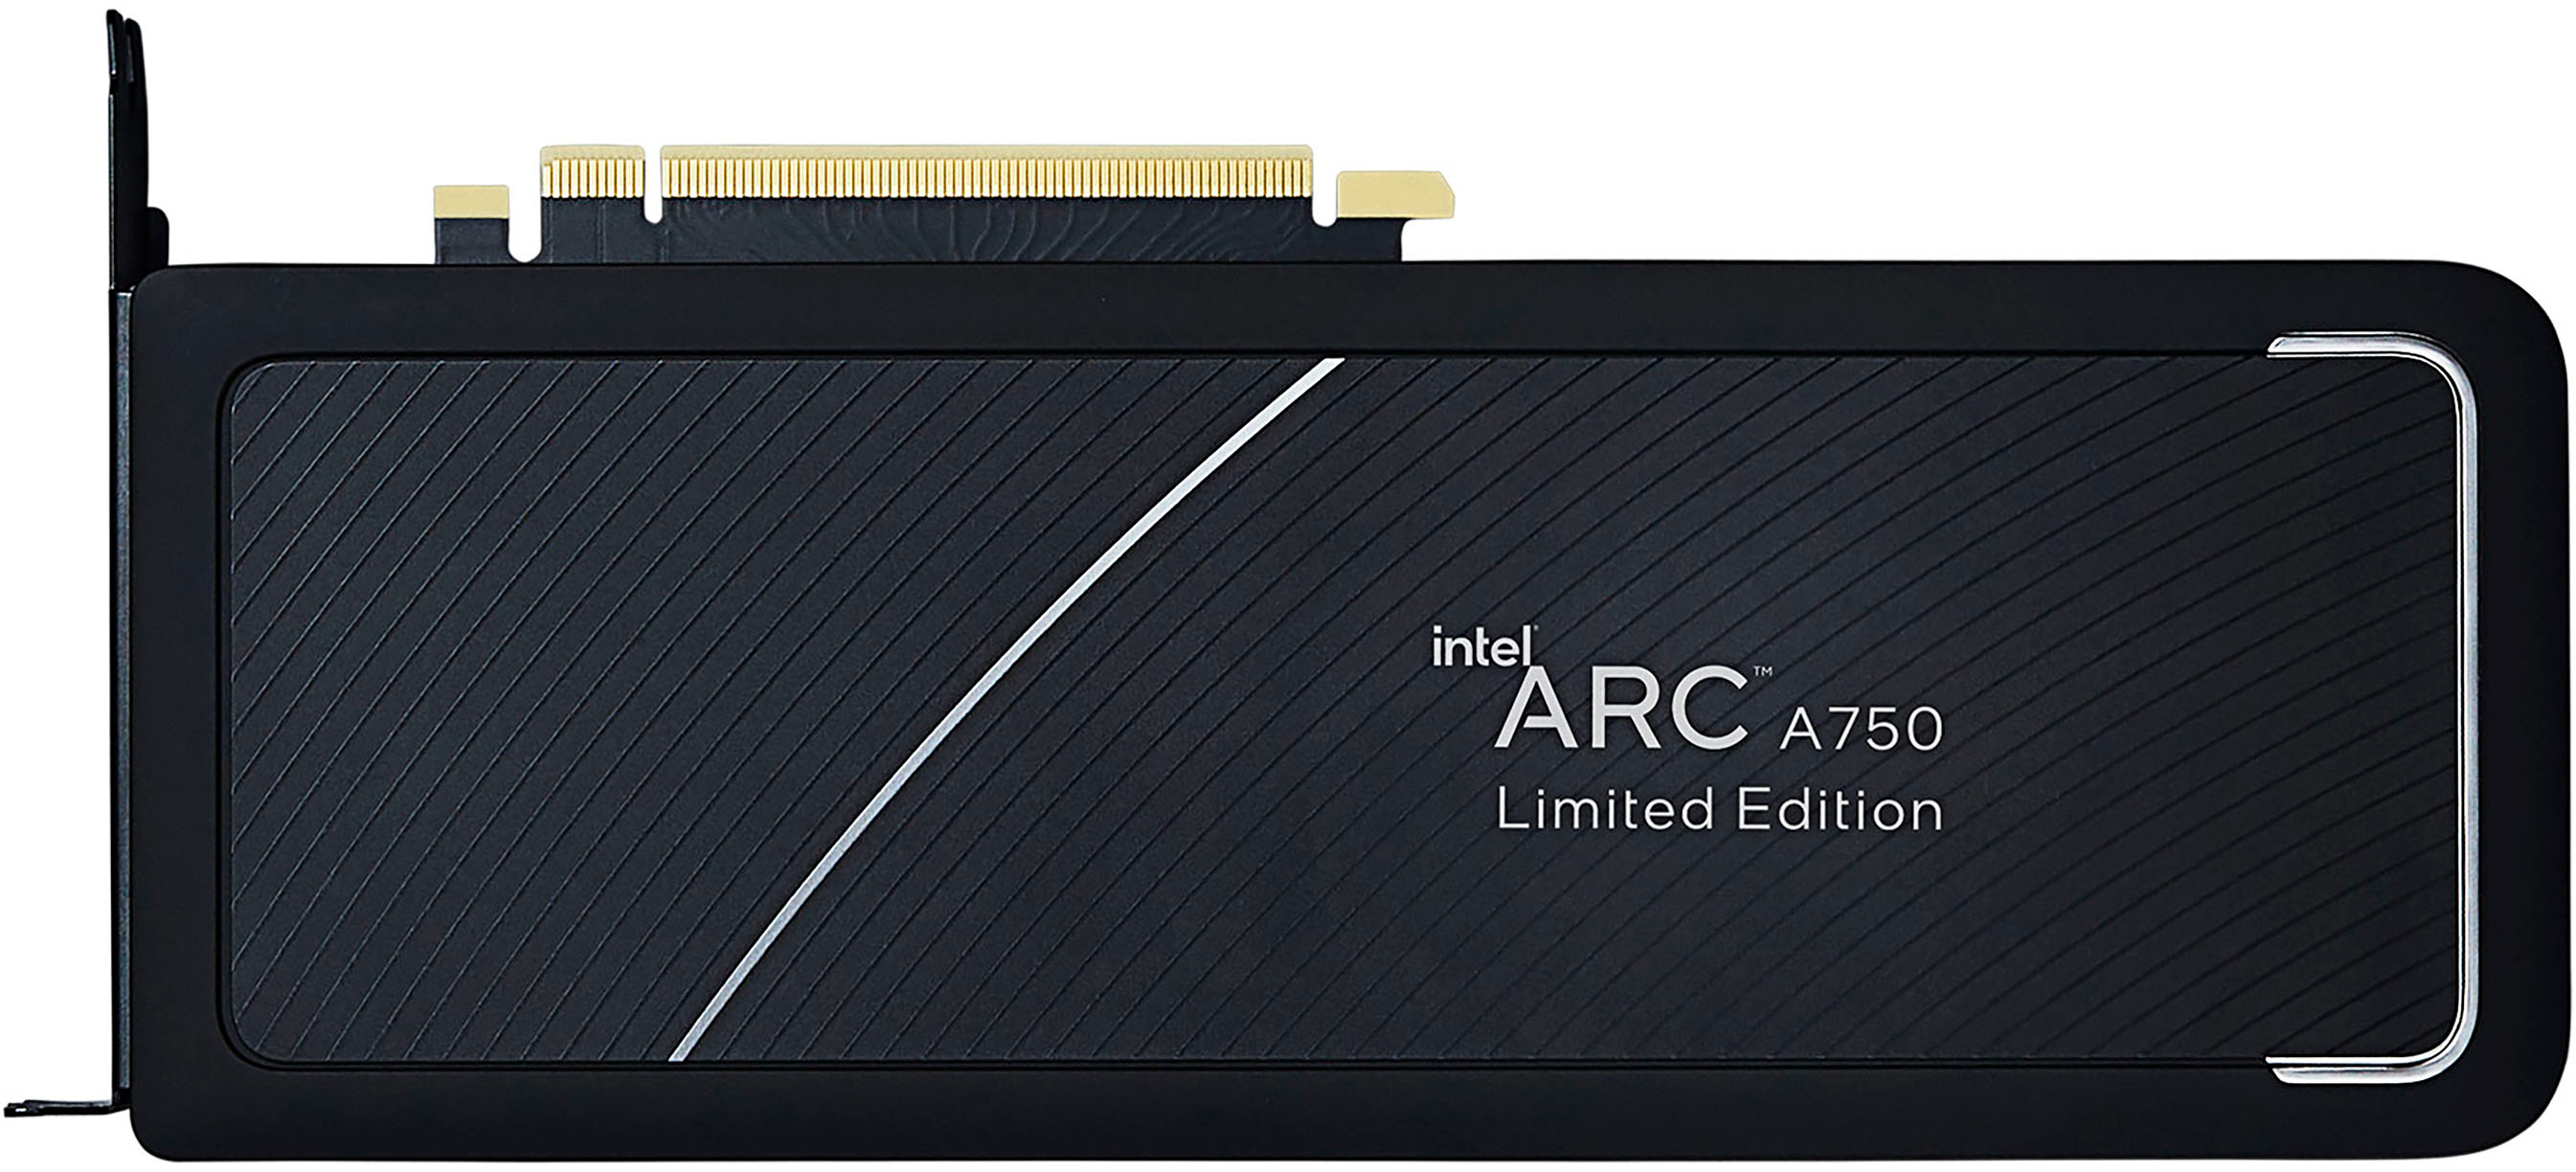 Intel ARK A750 8GB